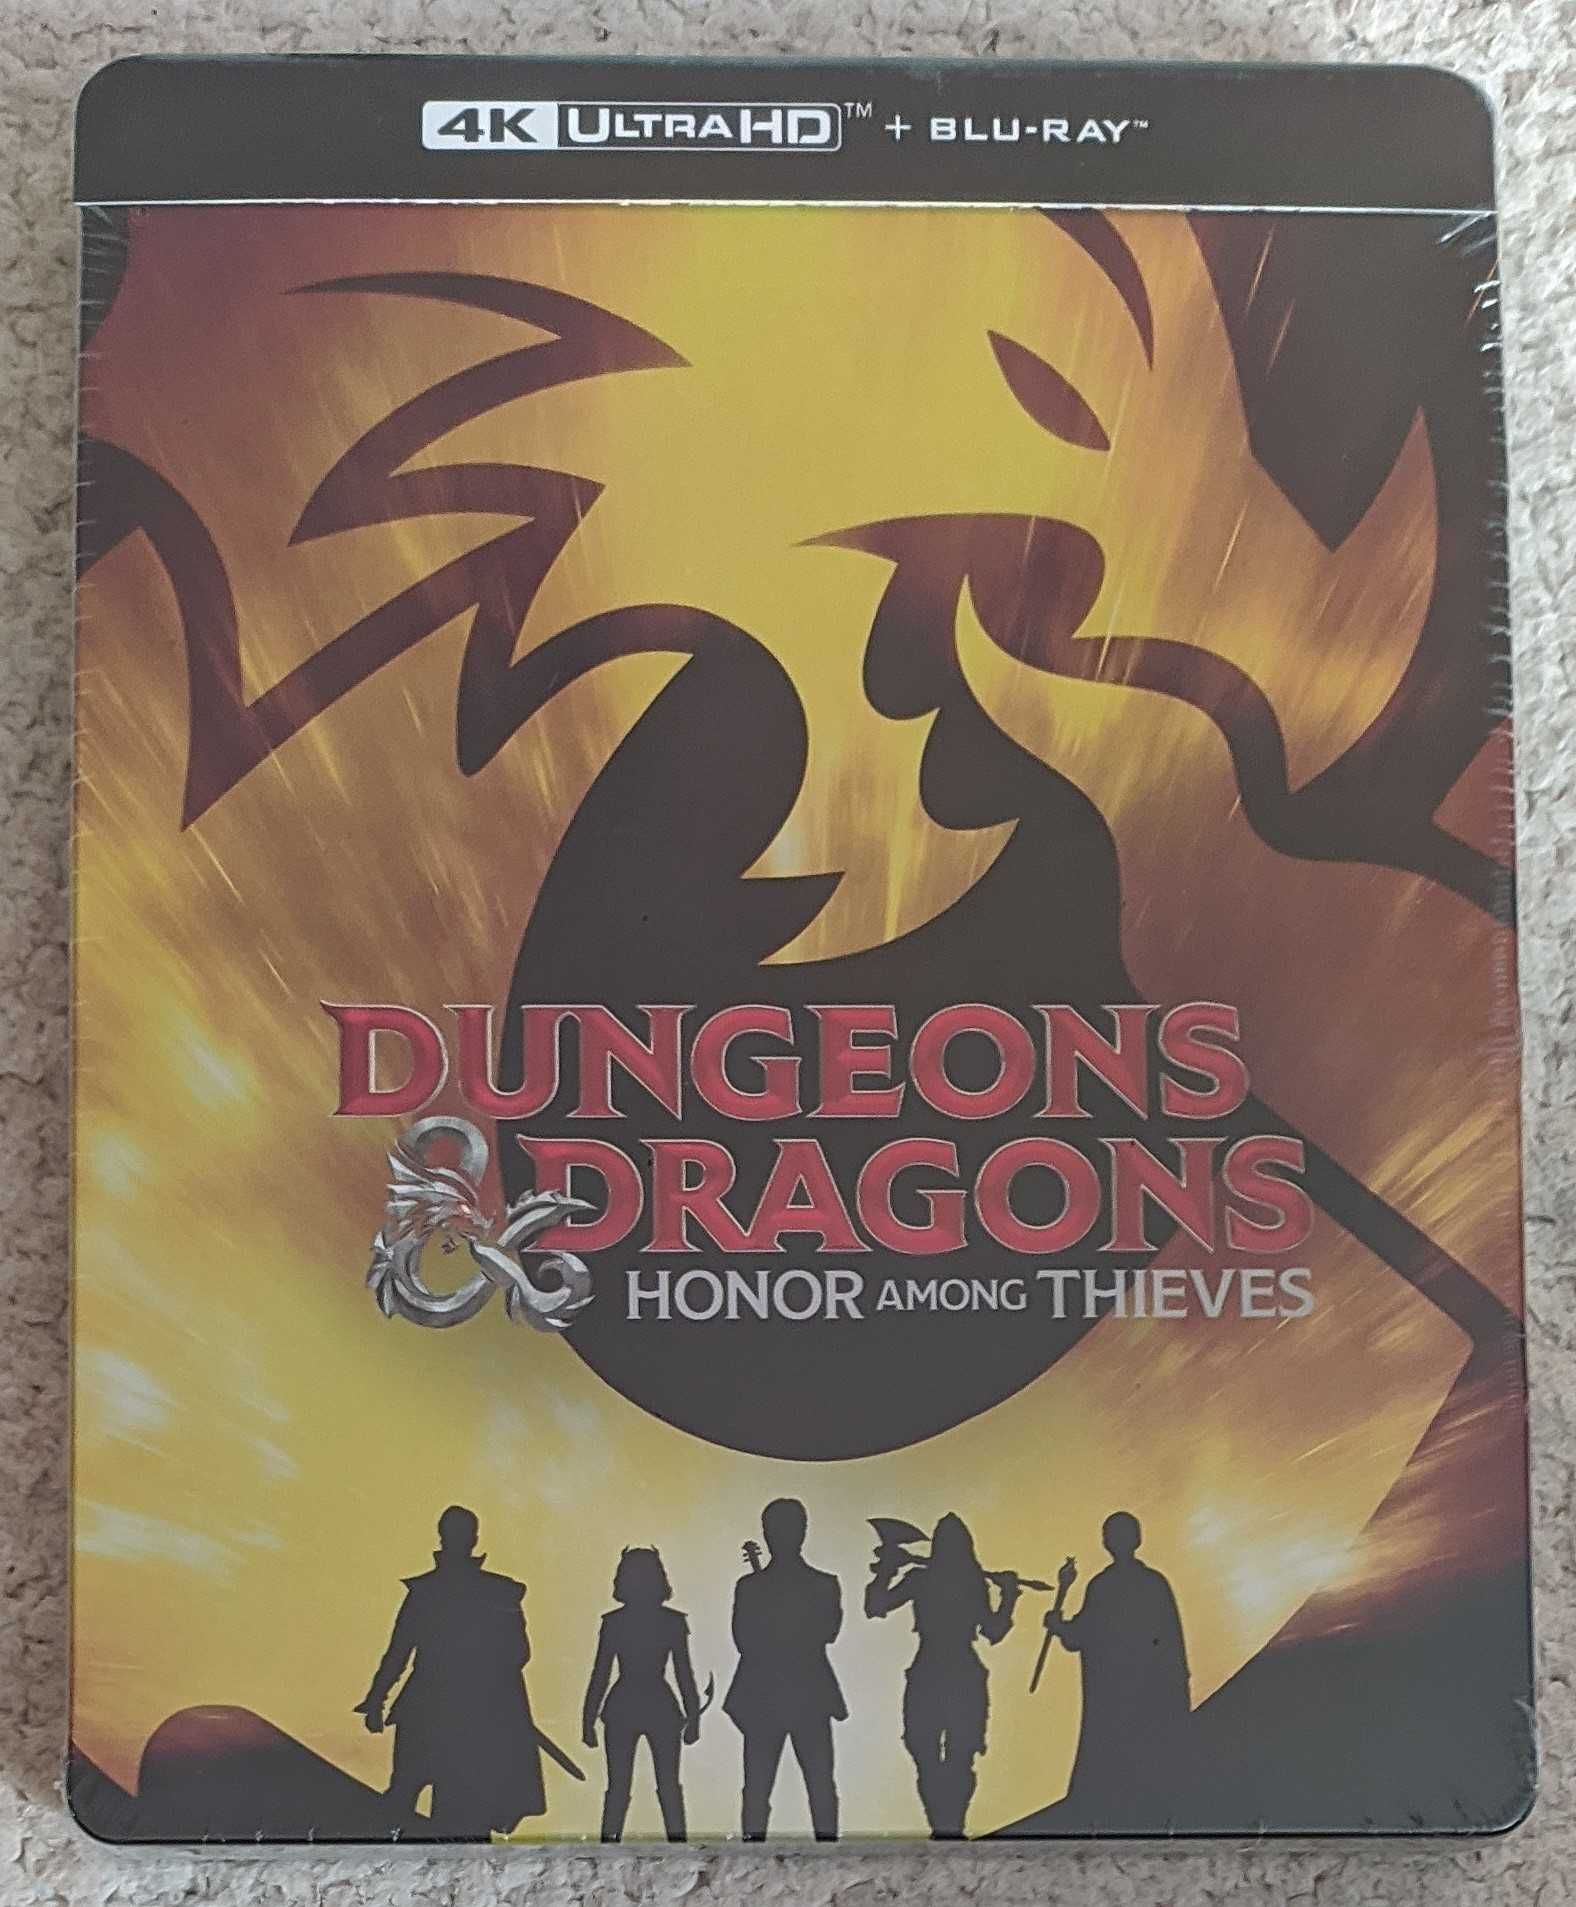 Dungeons & Dragons: Złodziejski honor [Steelbook][4K UHD Blu-Ray][PL]